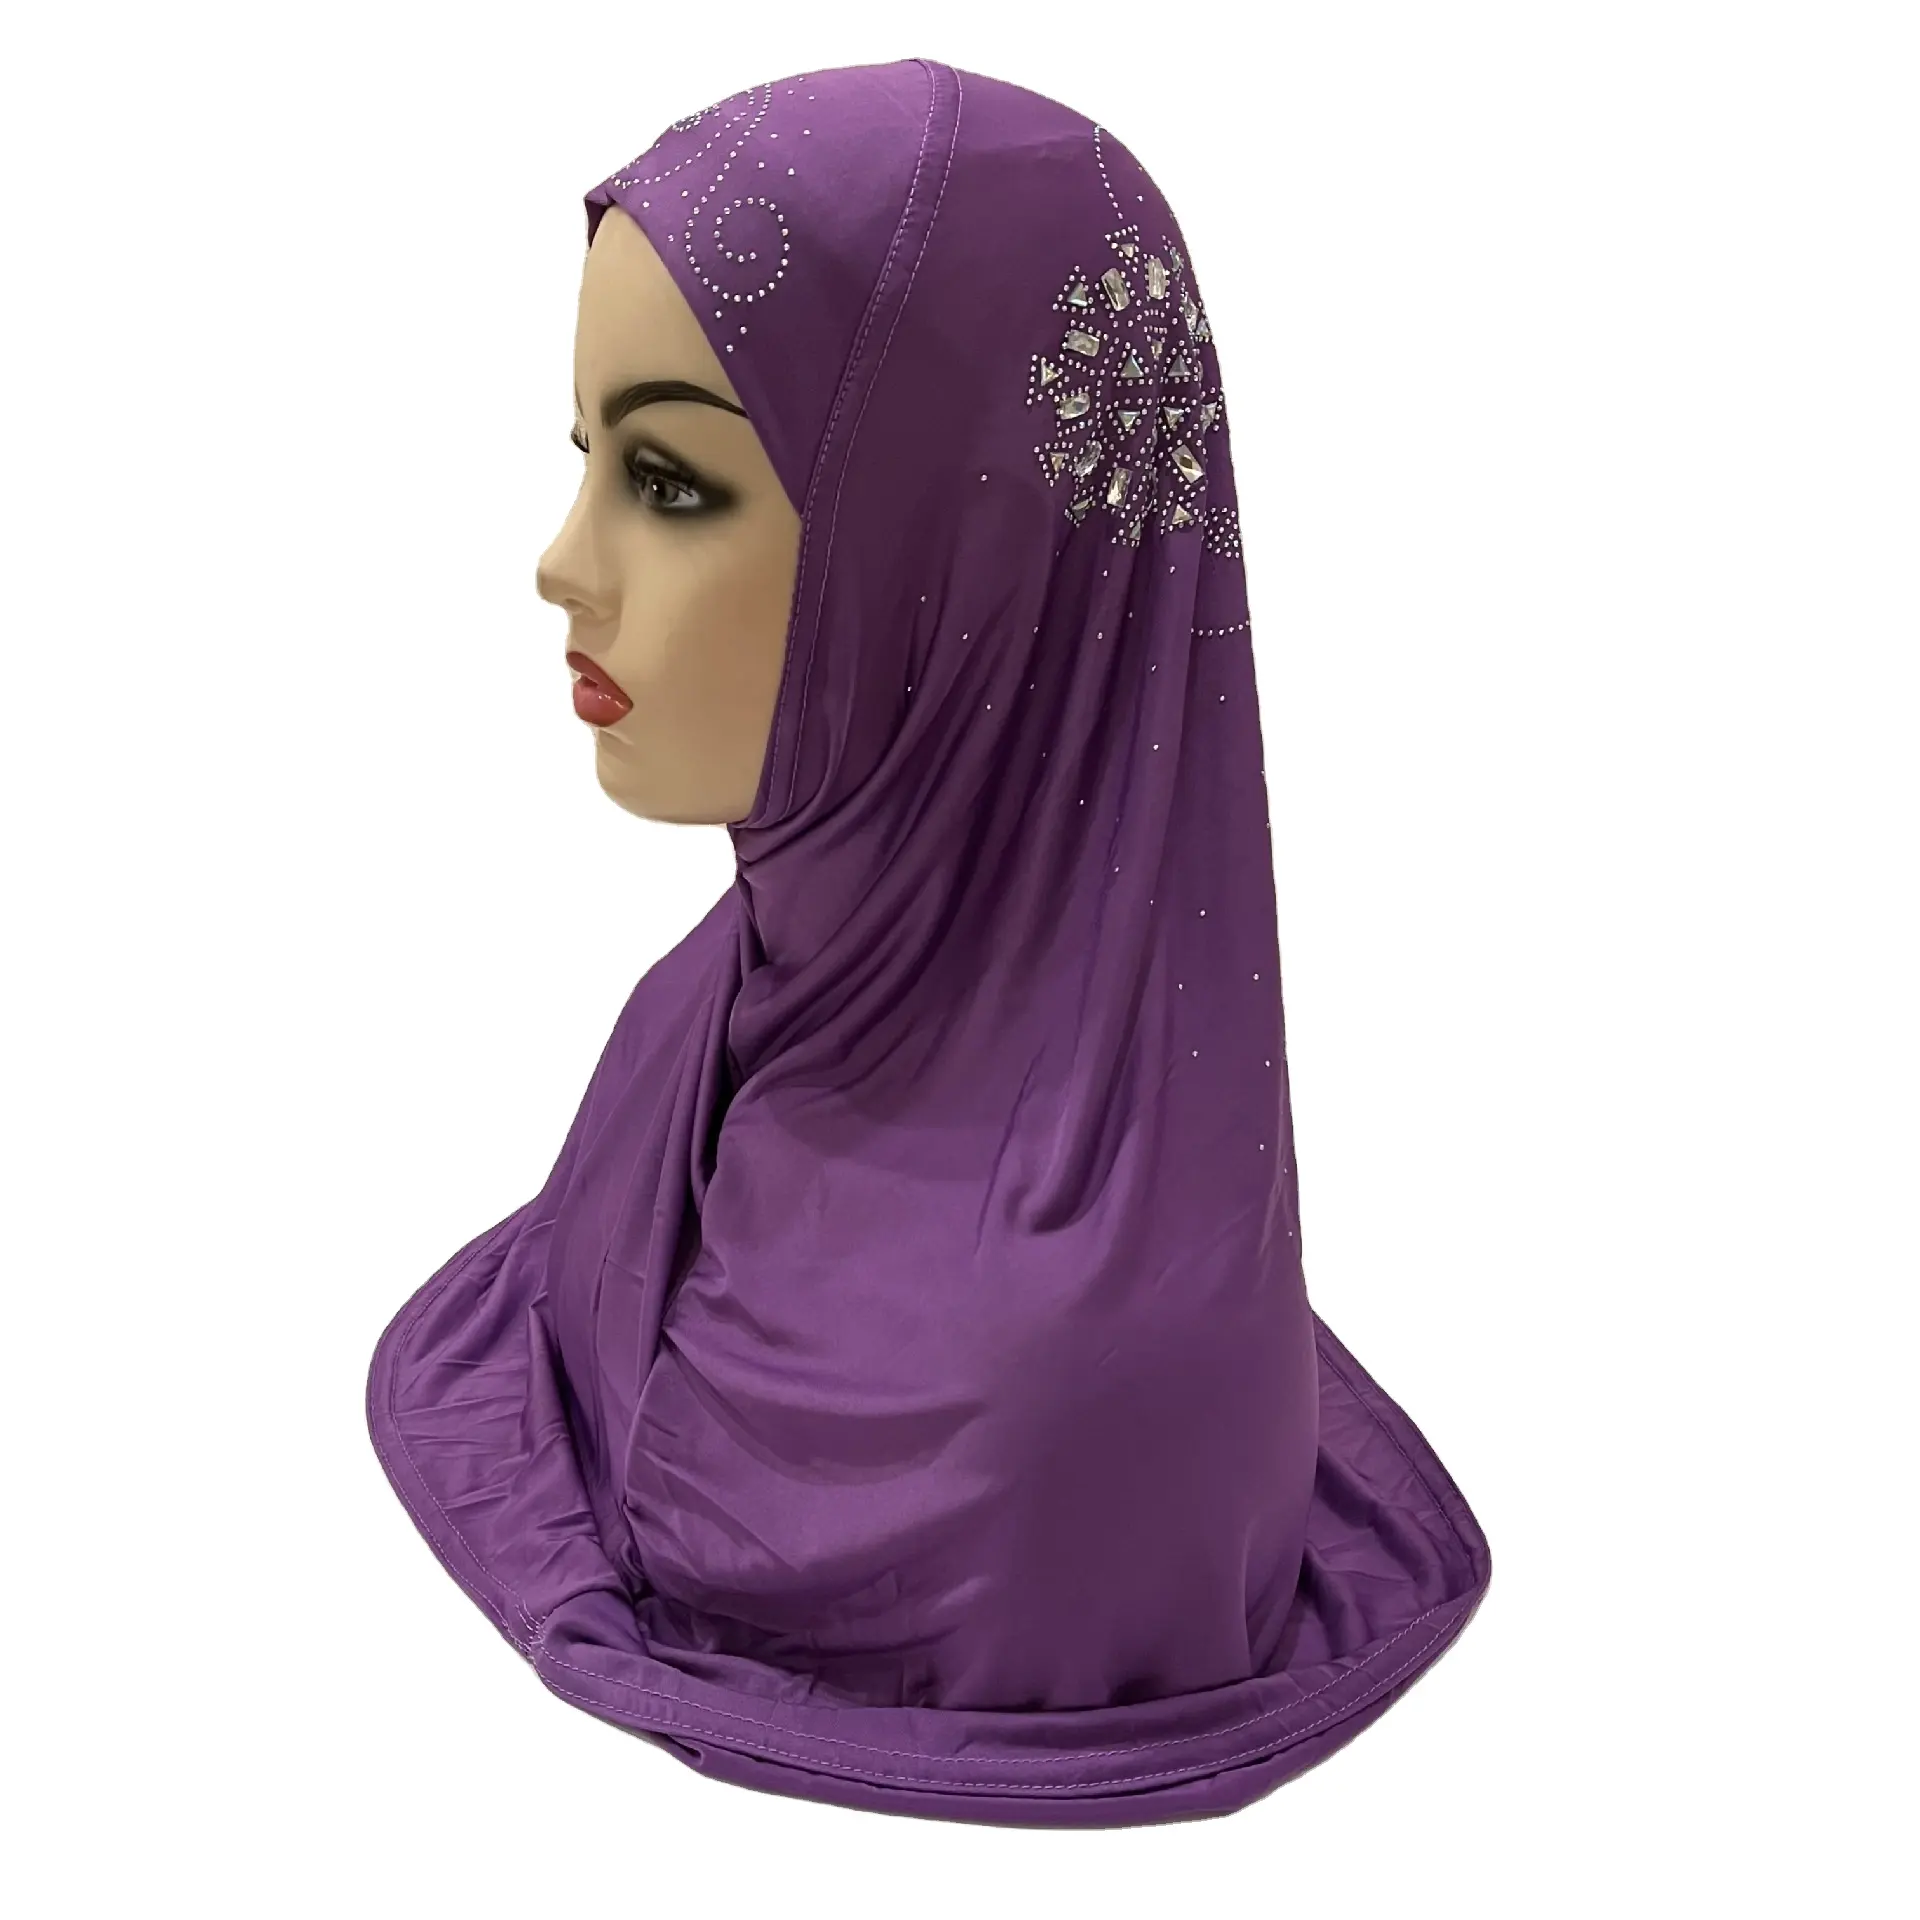 저렴한 가격 이슬람 꽃 뜨거운 드릴링 얼음 실크 패브릭 일반 viscose 스카프 hijab